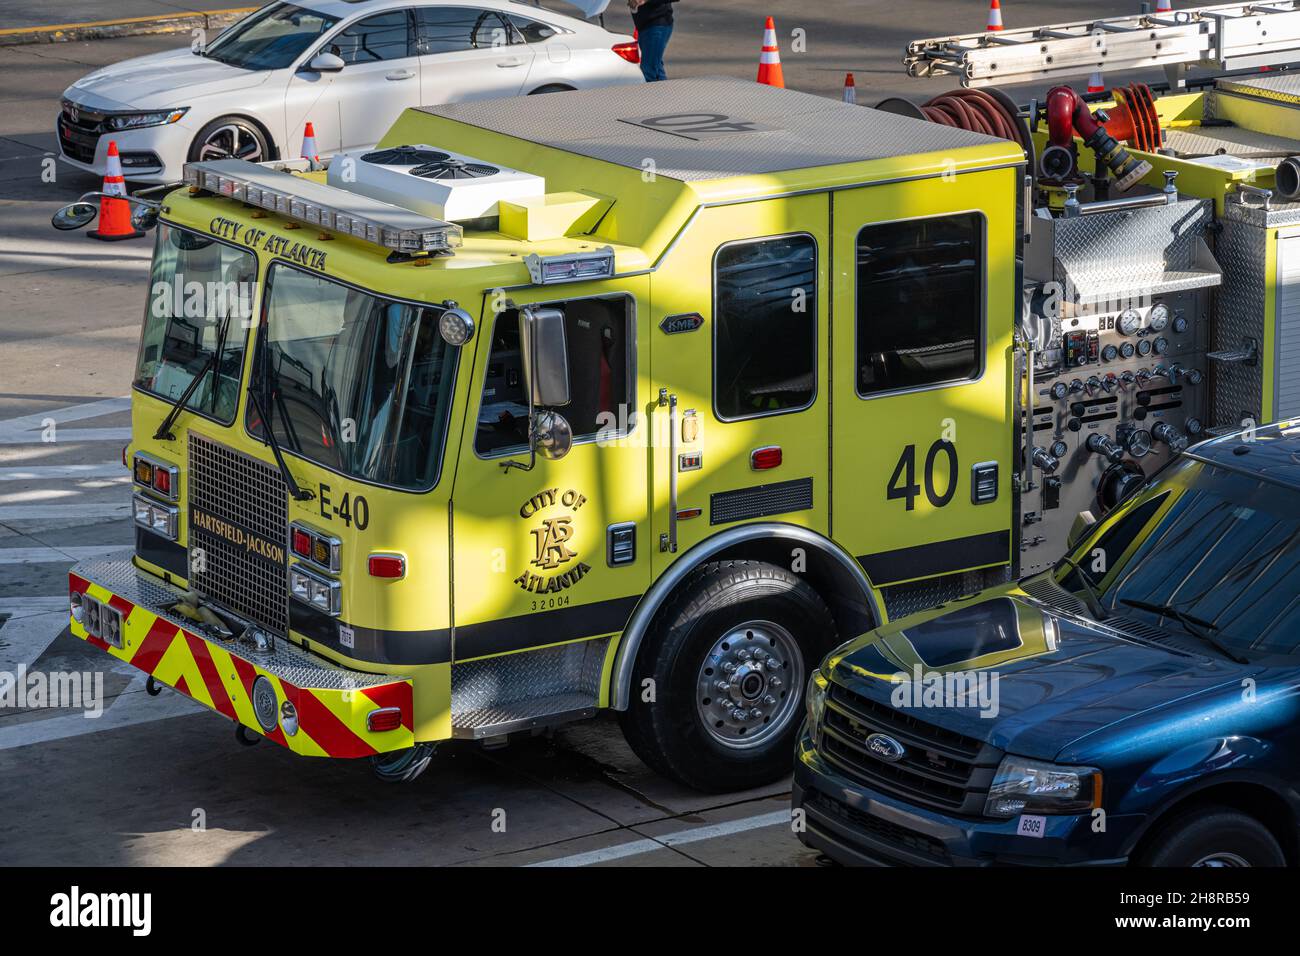 Camion d'incendie Engine 40 du département de sauvetage des incendies d'Atlanta à l'aéroport international Hartsfield-Jackson d'Atlanta à Atlanta, en Géorgie.(ÉTATS-UNIS) Banque D'Images